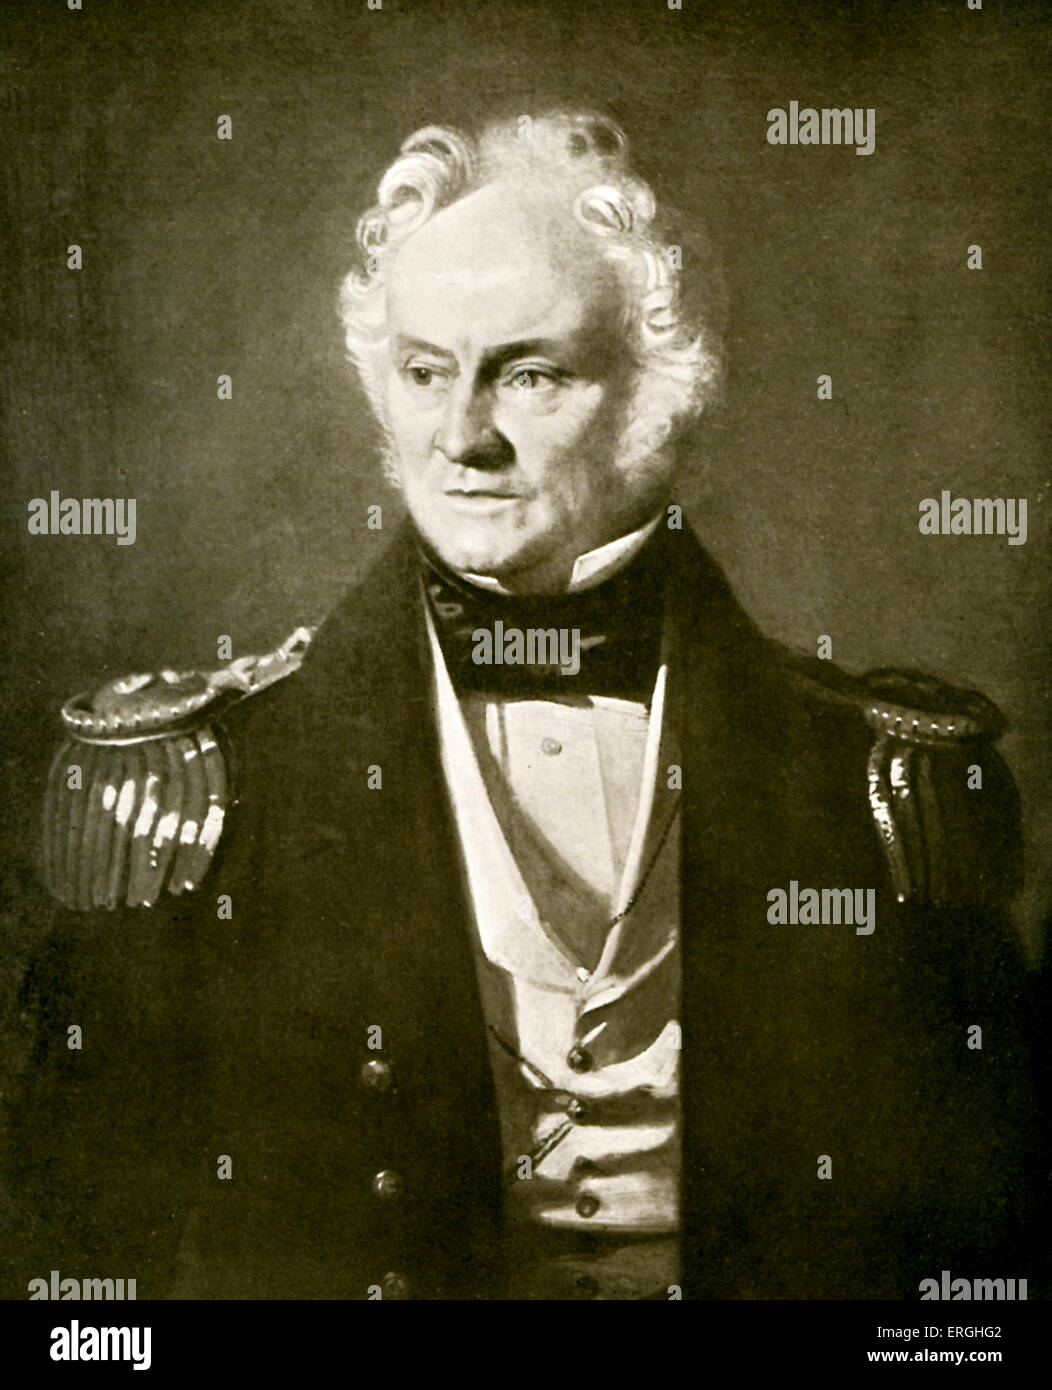 Sir William Edward Perry - Ritratto di inglese-ammiraglio e Arctic explorer. 19 Dicembre 1790 - 8 o 9 luglio 1855. Foto Stock